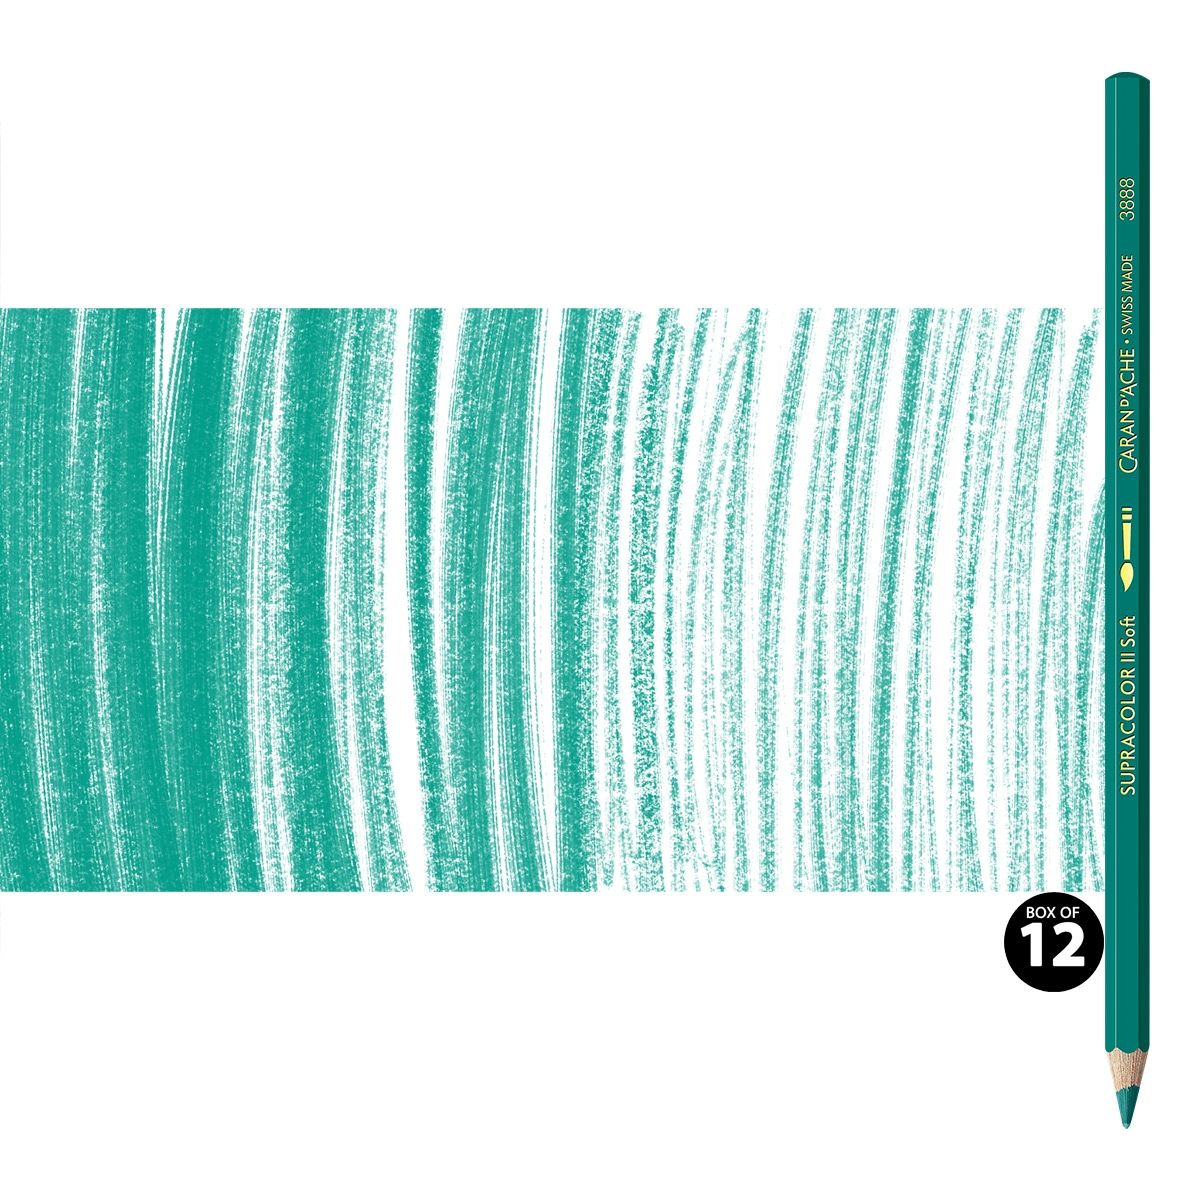 Supracolor II Watercolor Pencils Box of 12 No. 190 - Greenish Blue